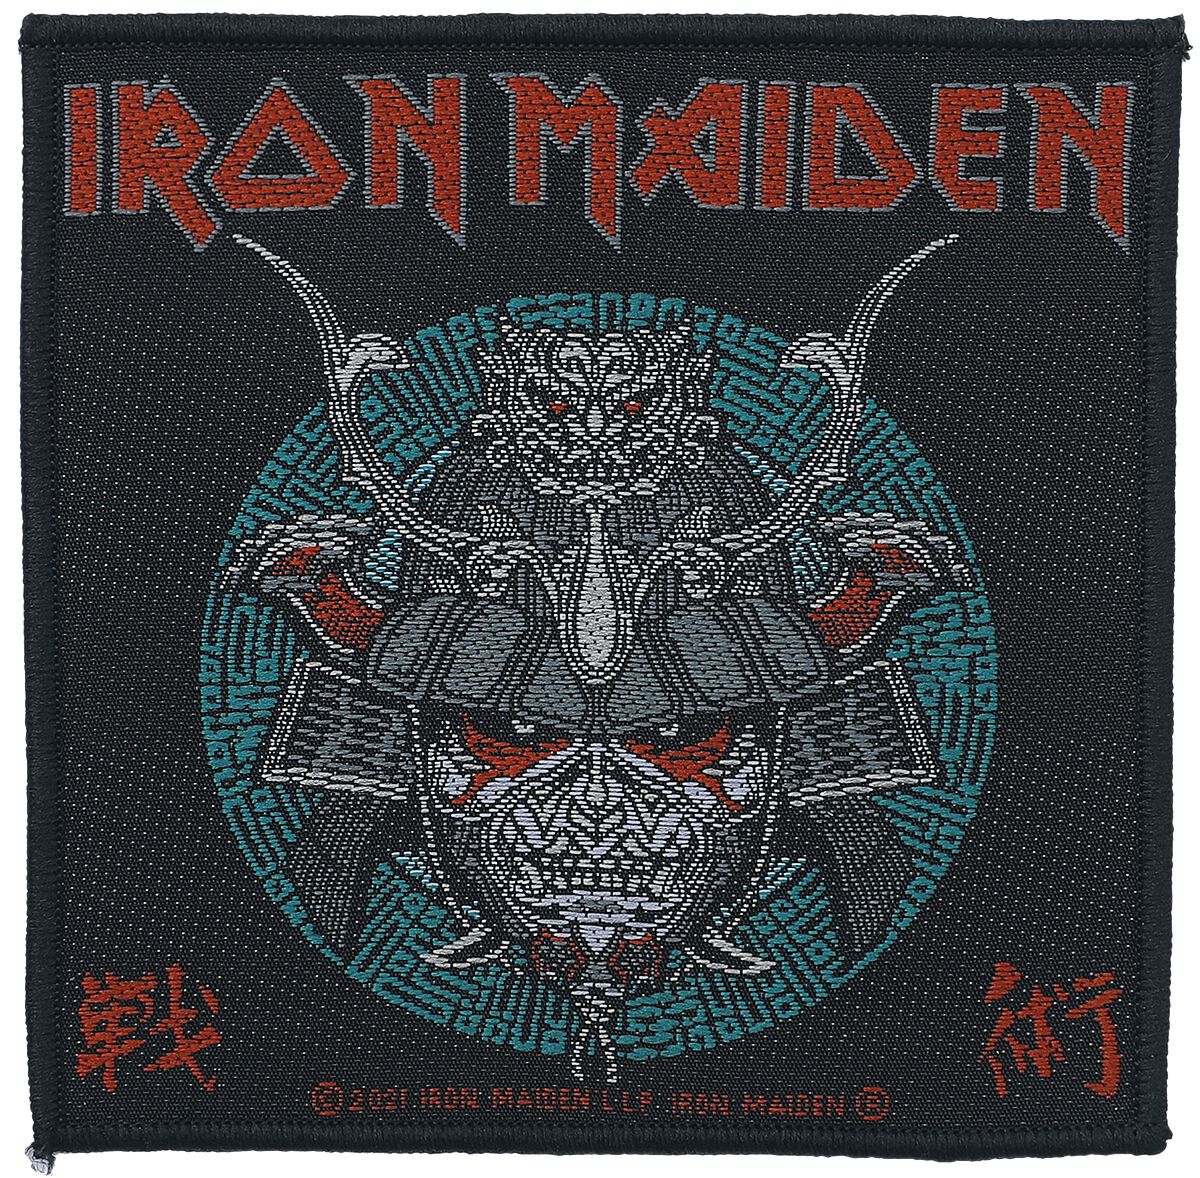 Iron Maiden Patch - Senjutsu Samurai Eddie - multicolor  - Lizenziertes Merchandise!